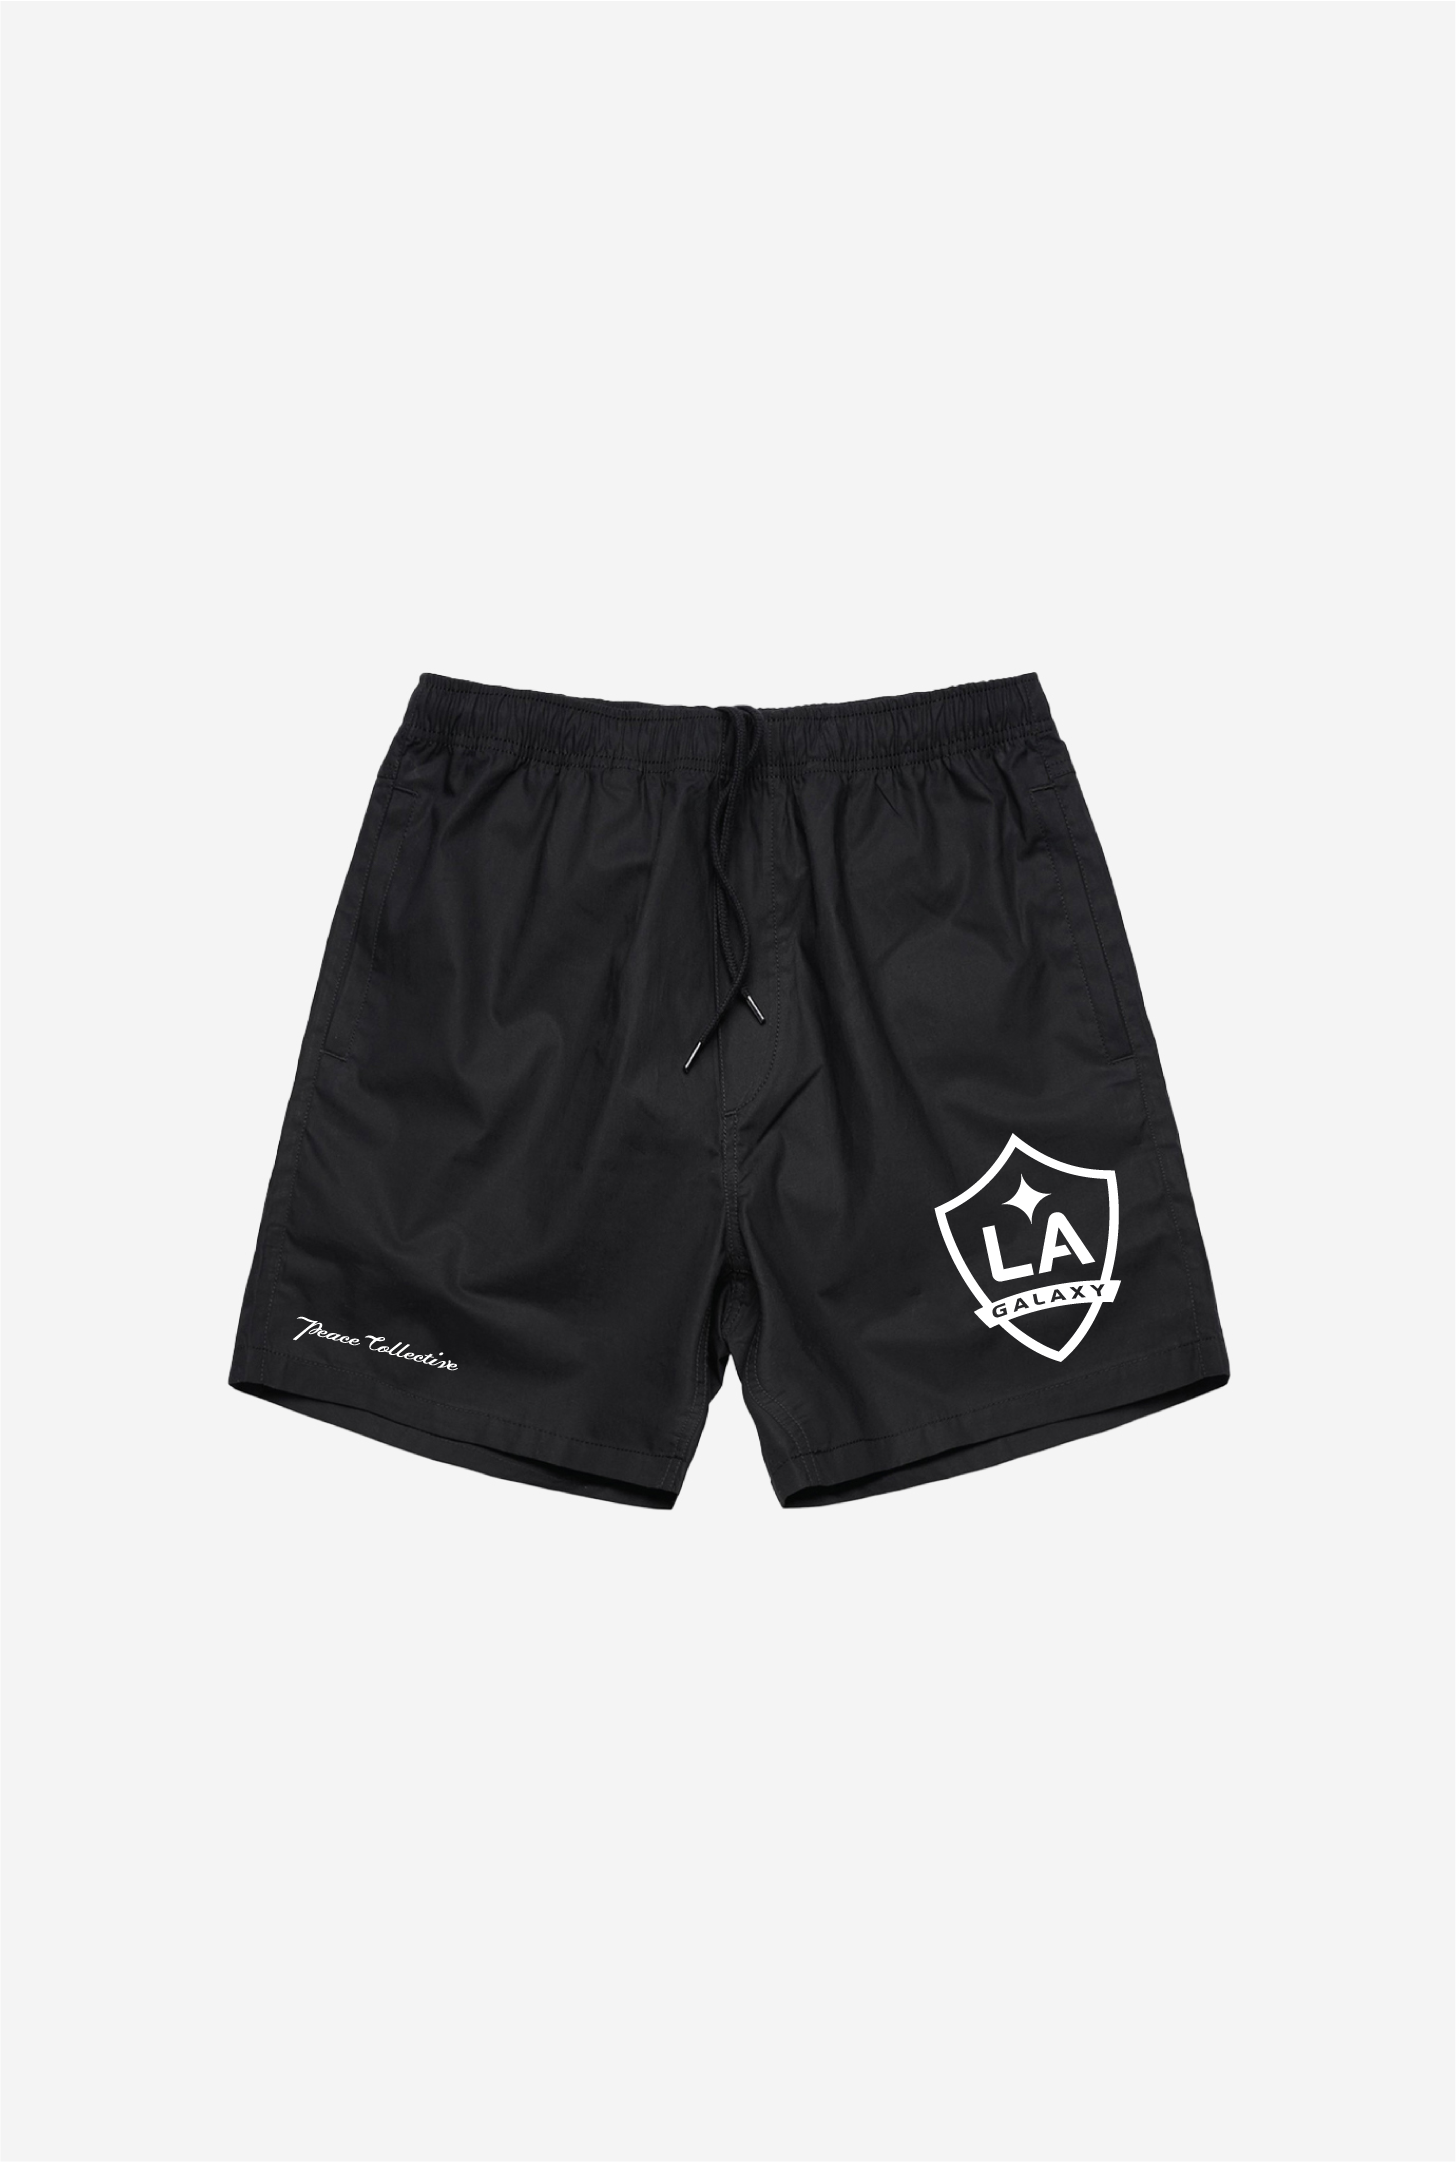 Los Angeles Galaxy Board Shorts - Black